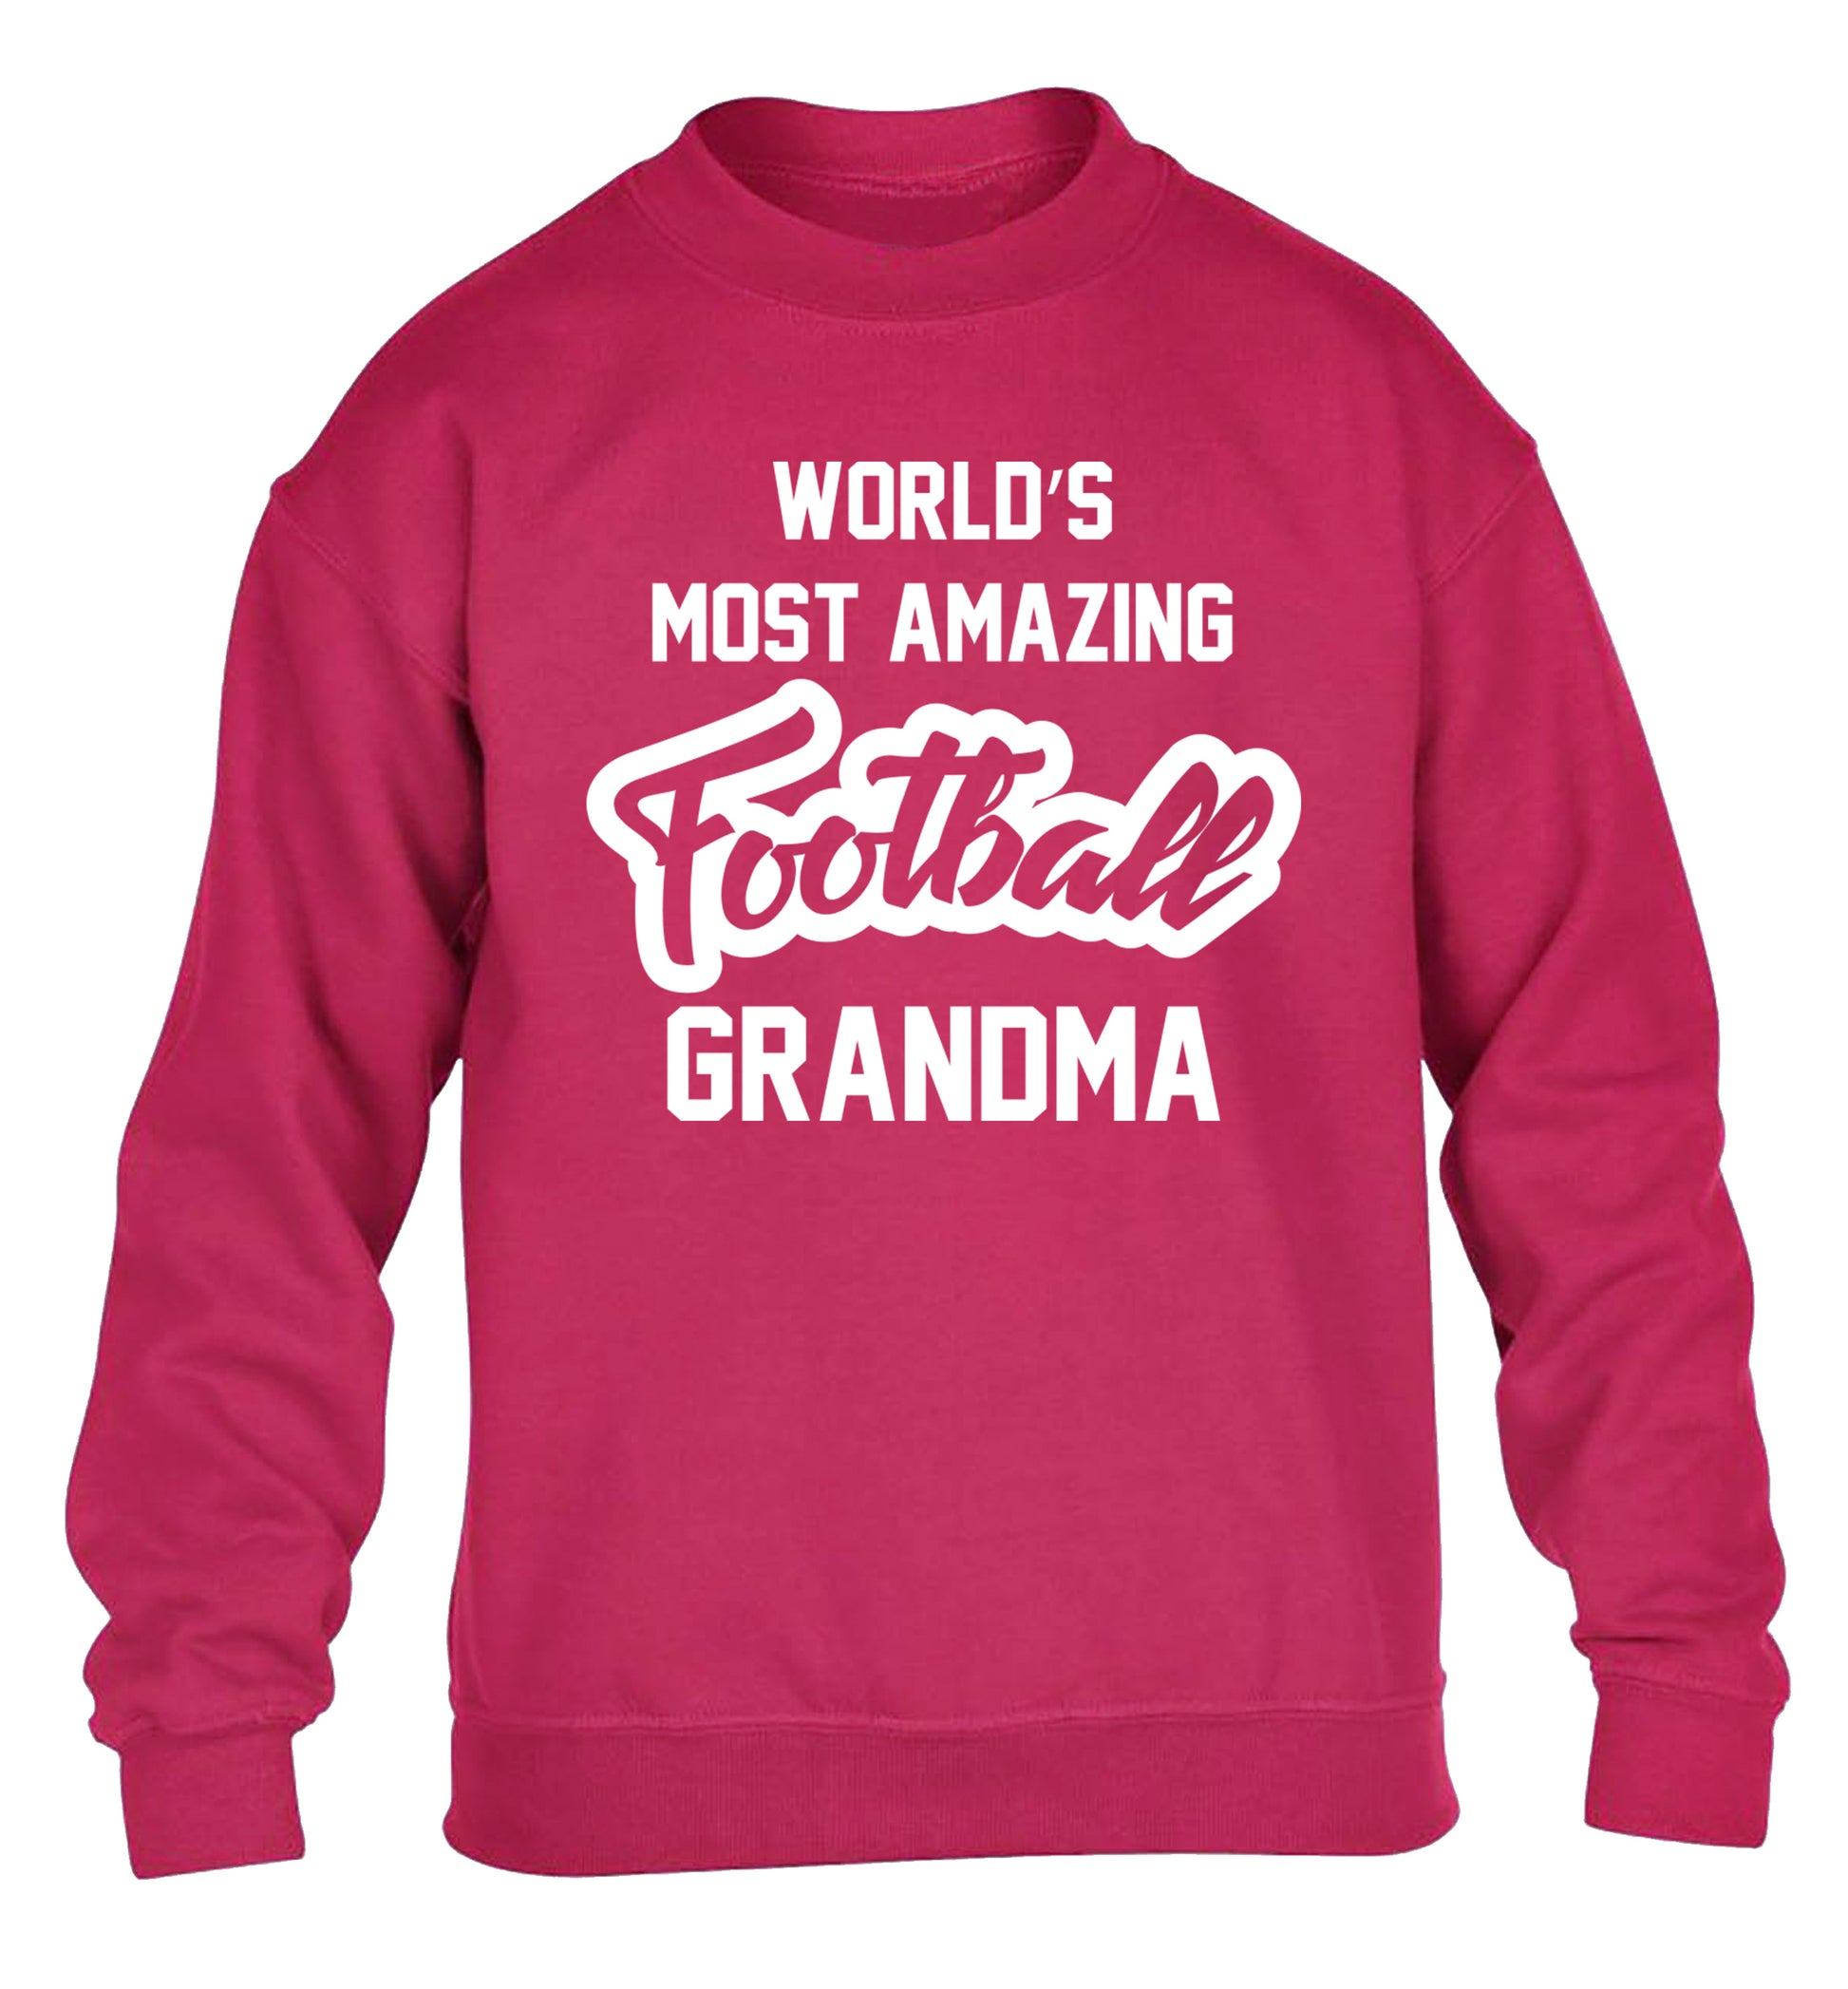 Worlds most amazing football grandma children's pink sweater 12-14 Years